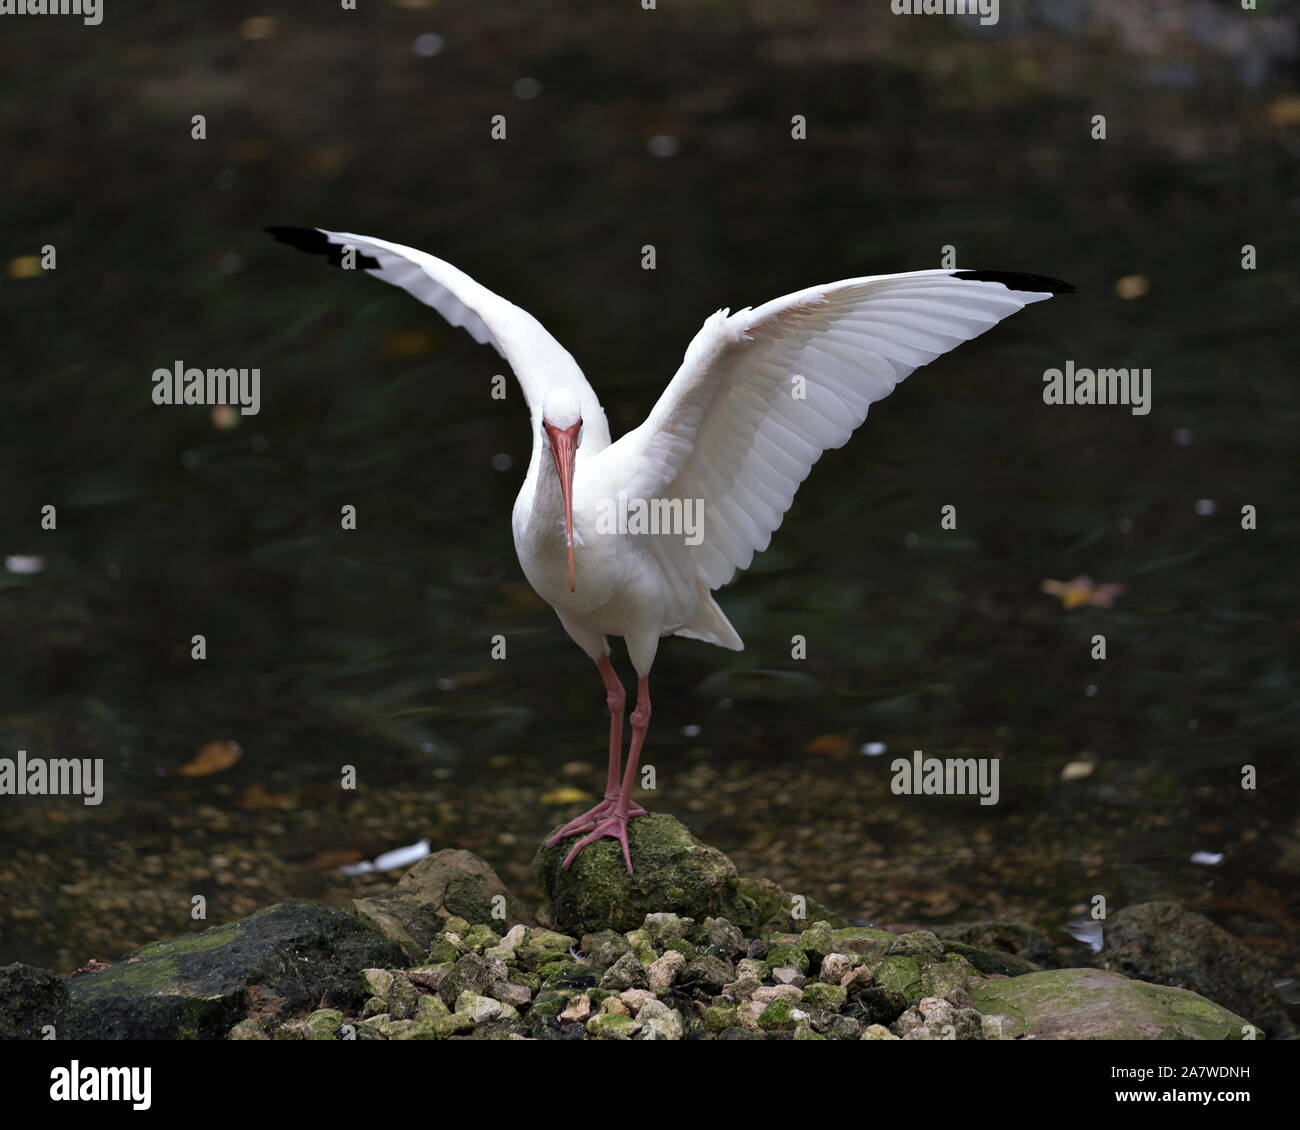 White Ibis Vogel mit seinem stretching Flügel stehend auf einem Felsen am Wasser mit seinem langen Schnabel, weißen Körper, rote Beine in seine Umwelt und surrou Stockfoto